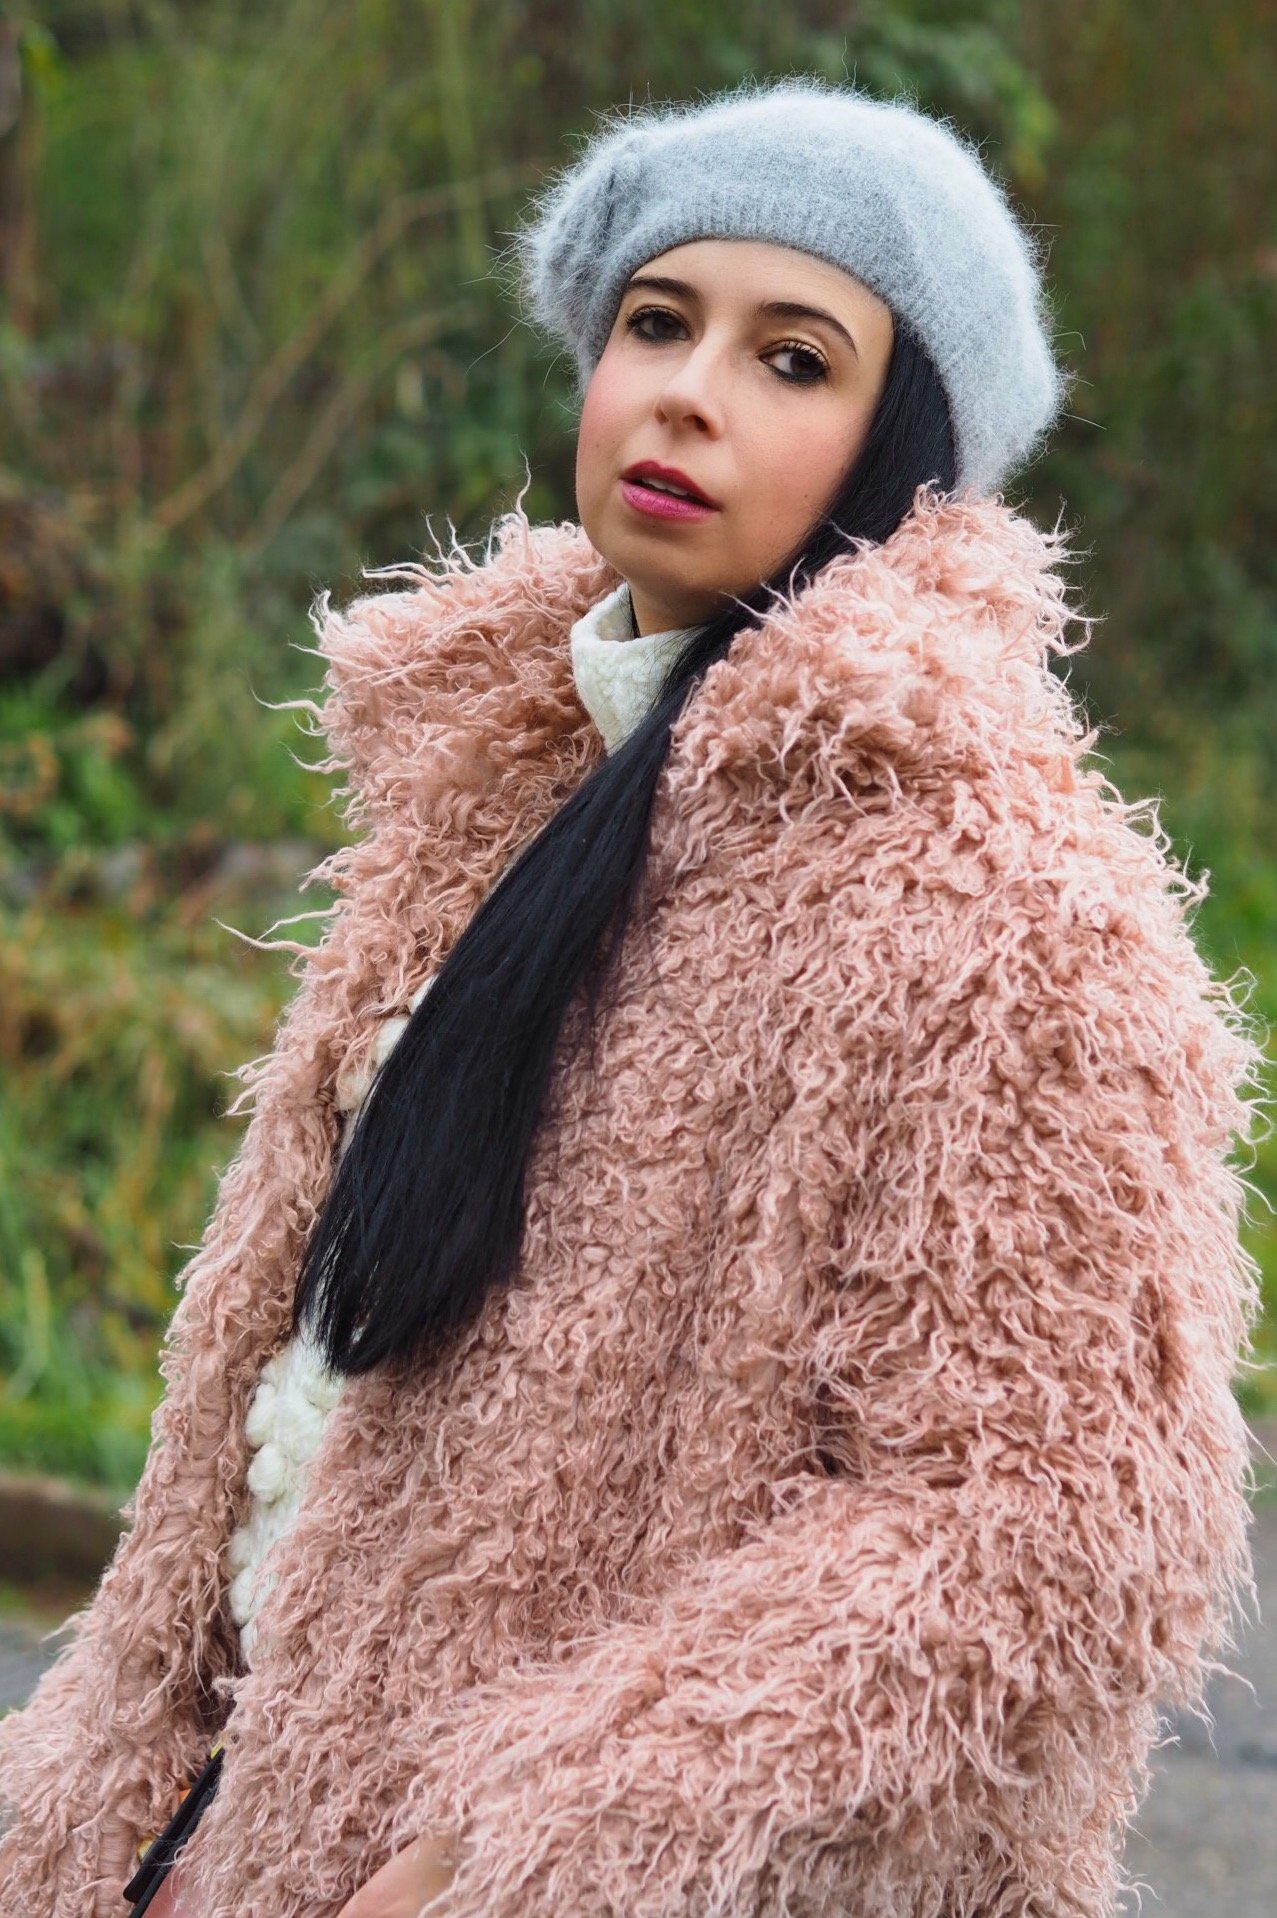 Heute zeige ich euch auf meinem Blog, dass der im Winter warm eingepackte Yeti-Look im XXL Oversize Mantel durchaus modisch und up to date aussehen kann